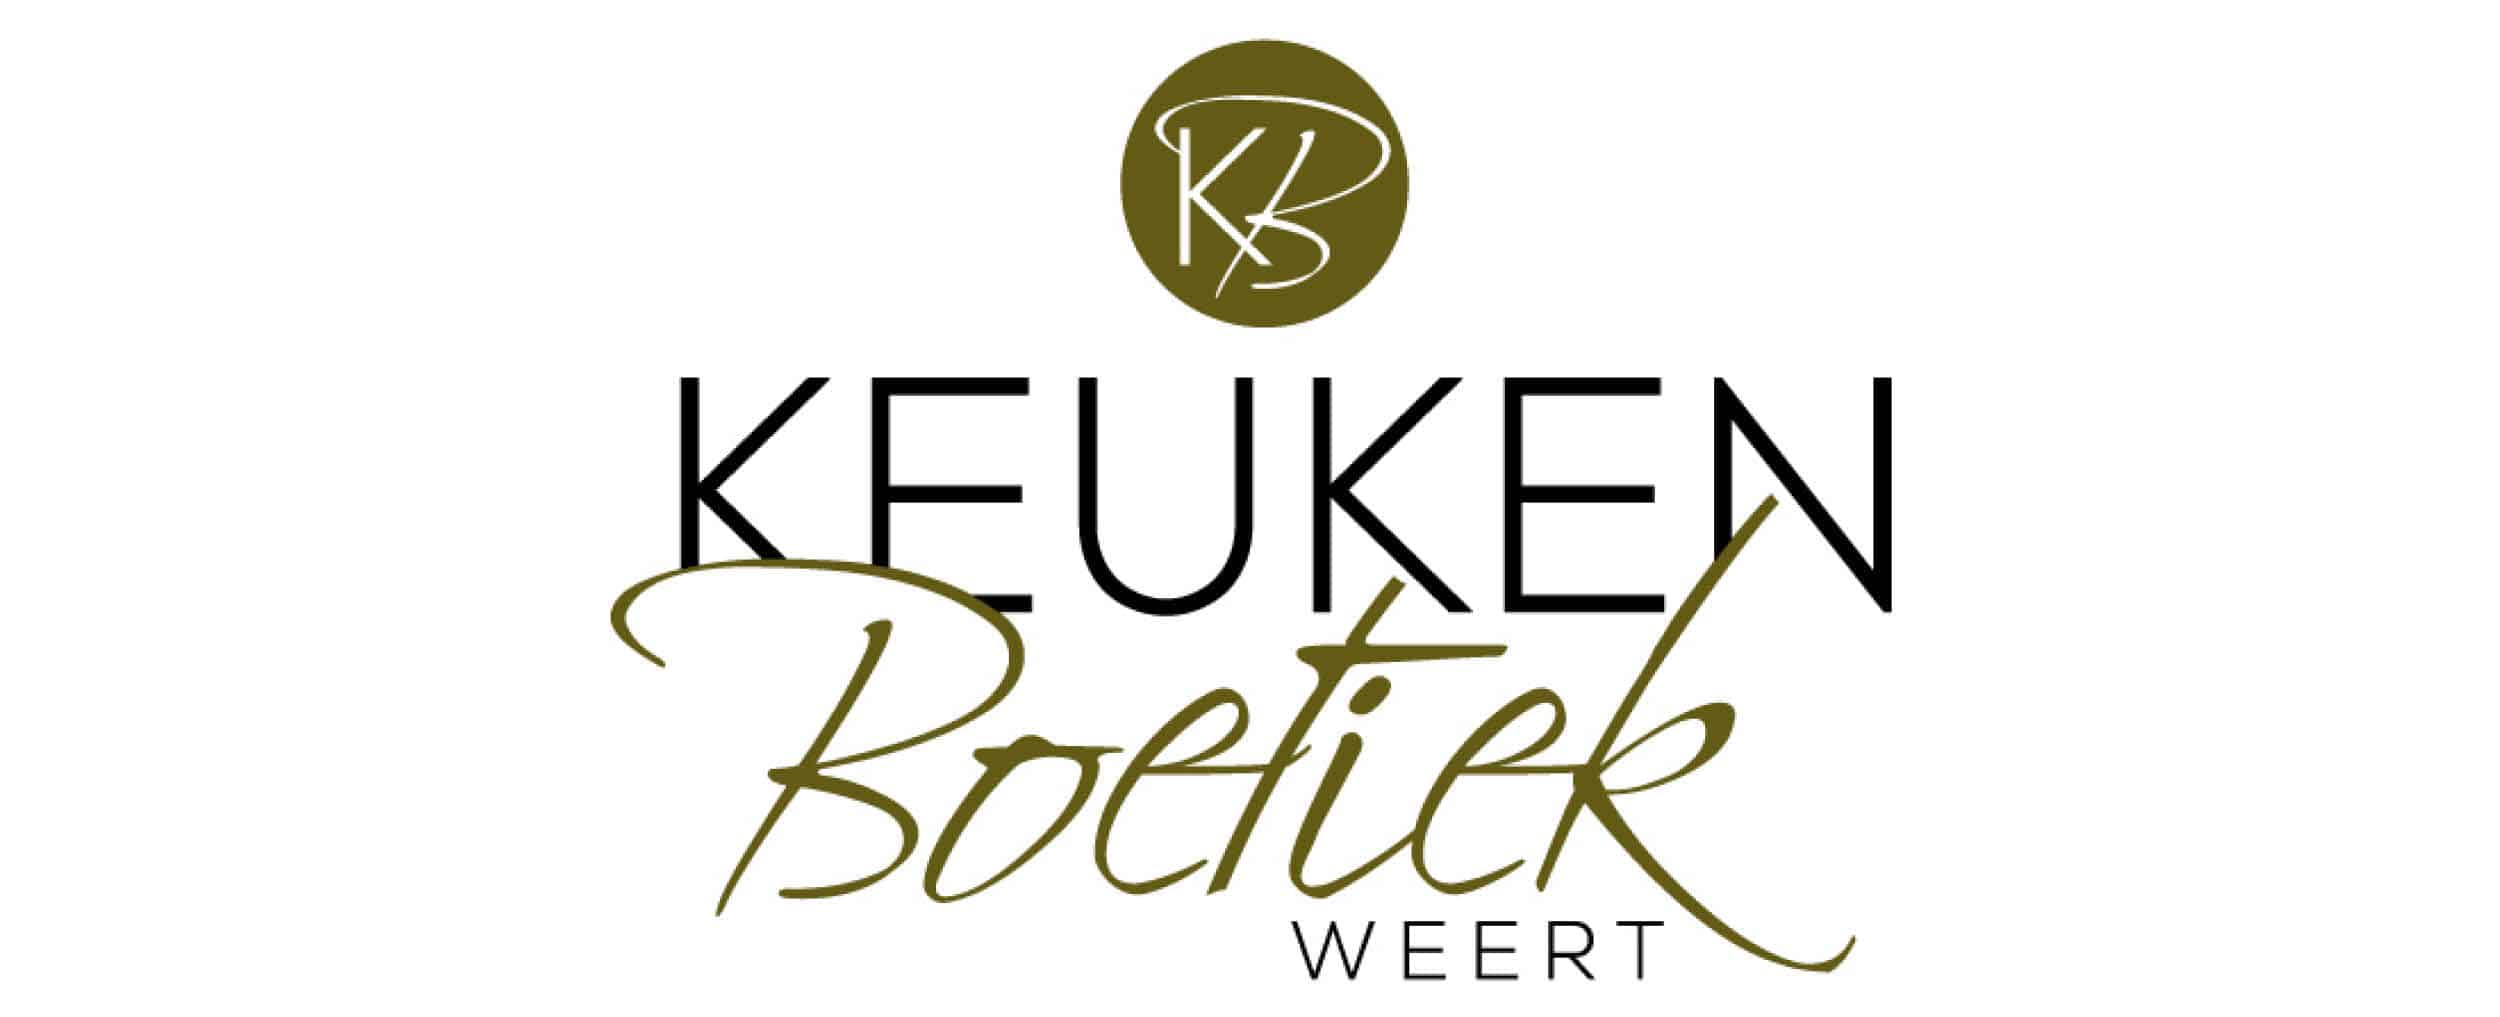 KEUKEN_BOETIEK_WEERT